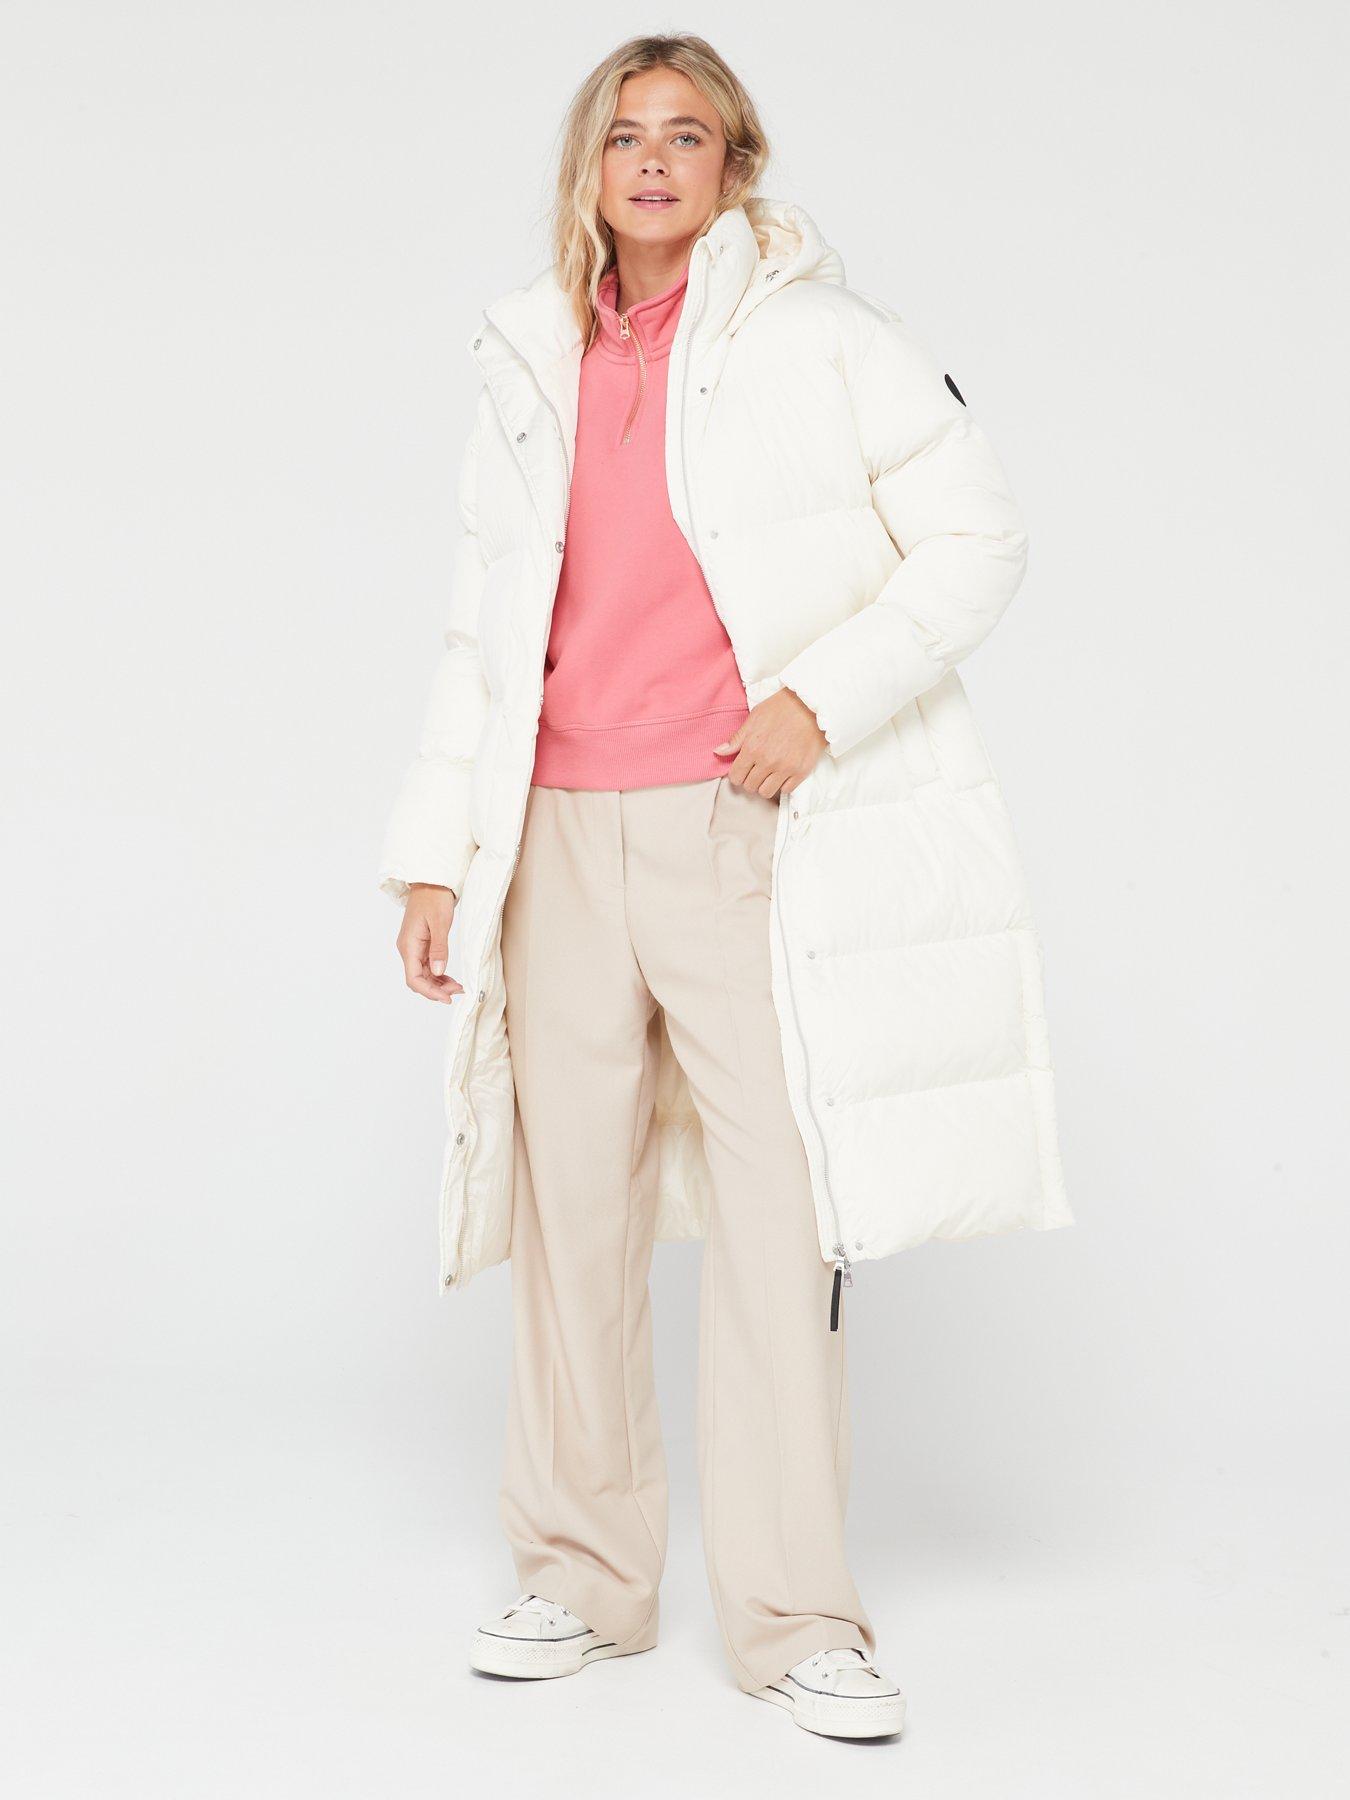 Superdry Faux Fur Hooded Longline Light Padded Puffer Coat - Women's Womens  Jackets